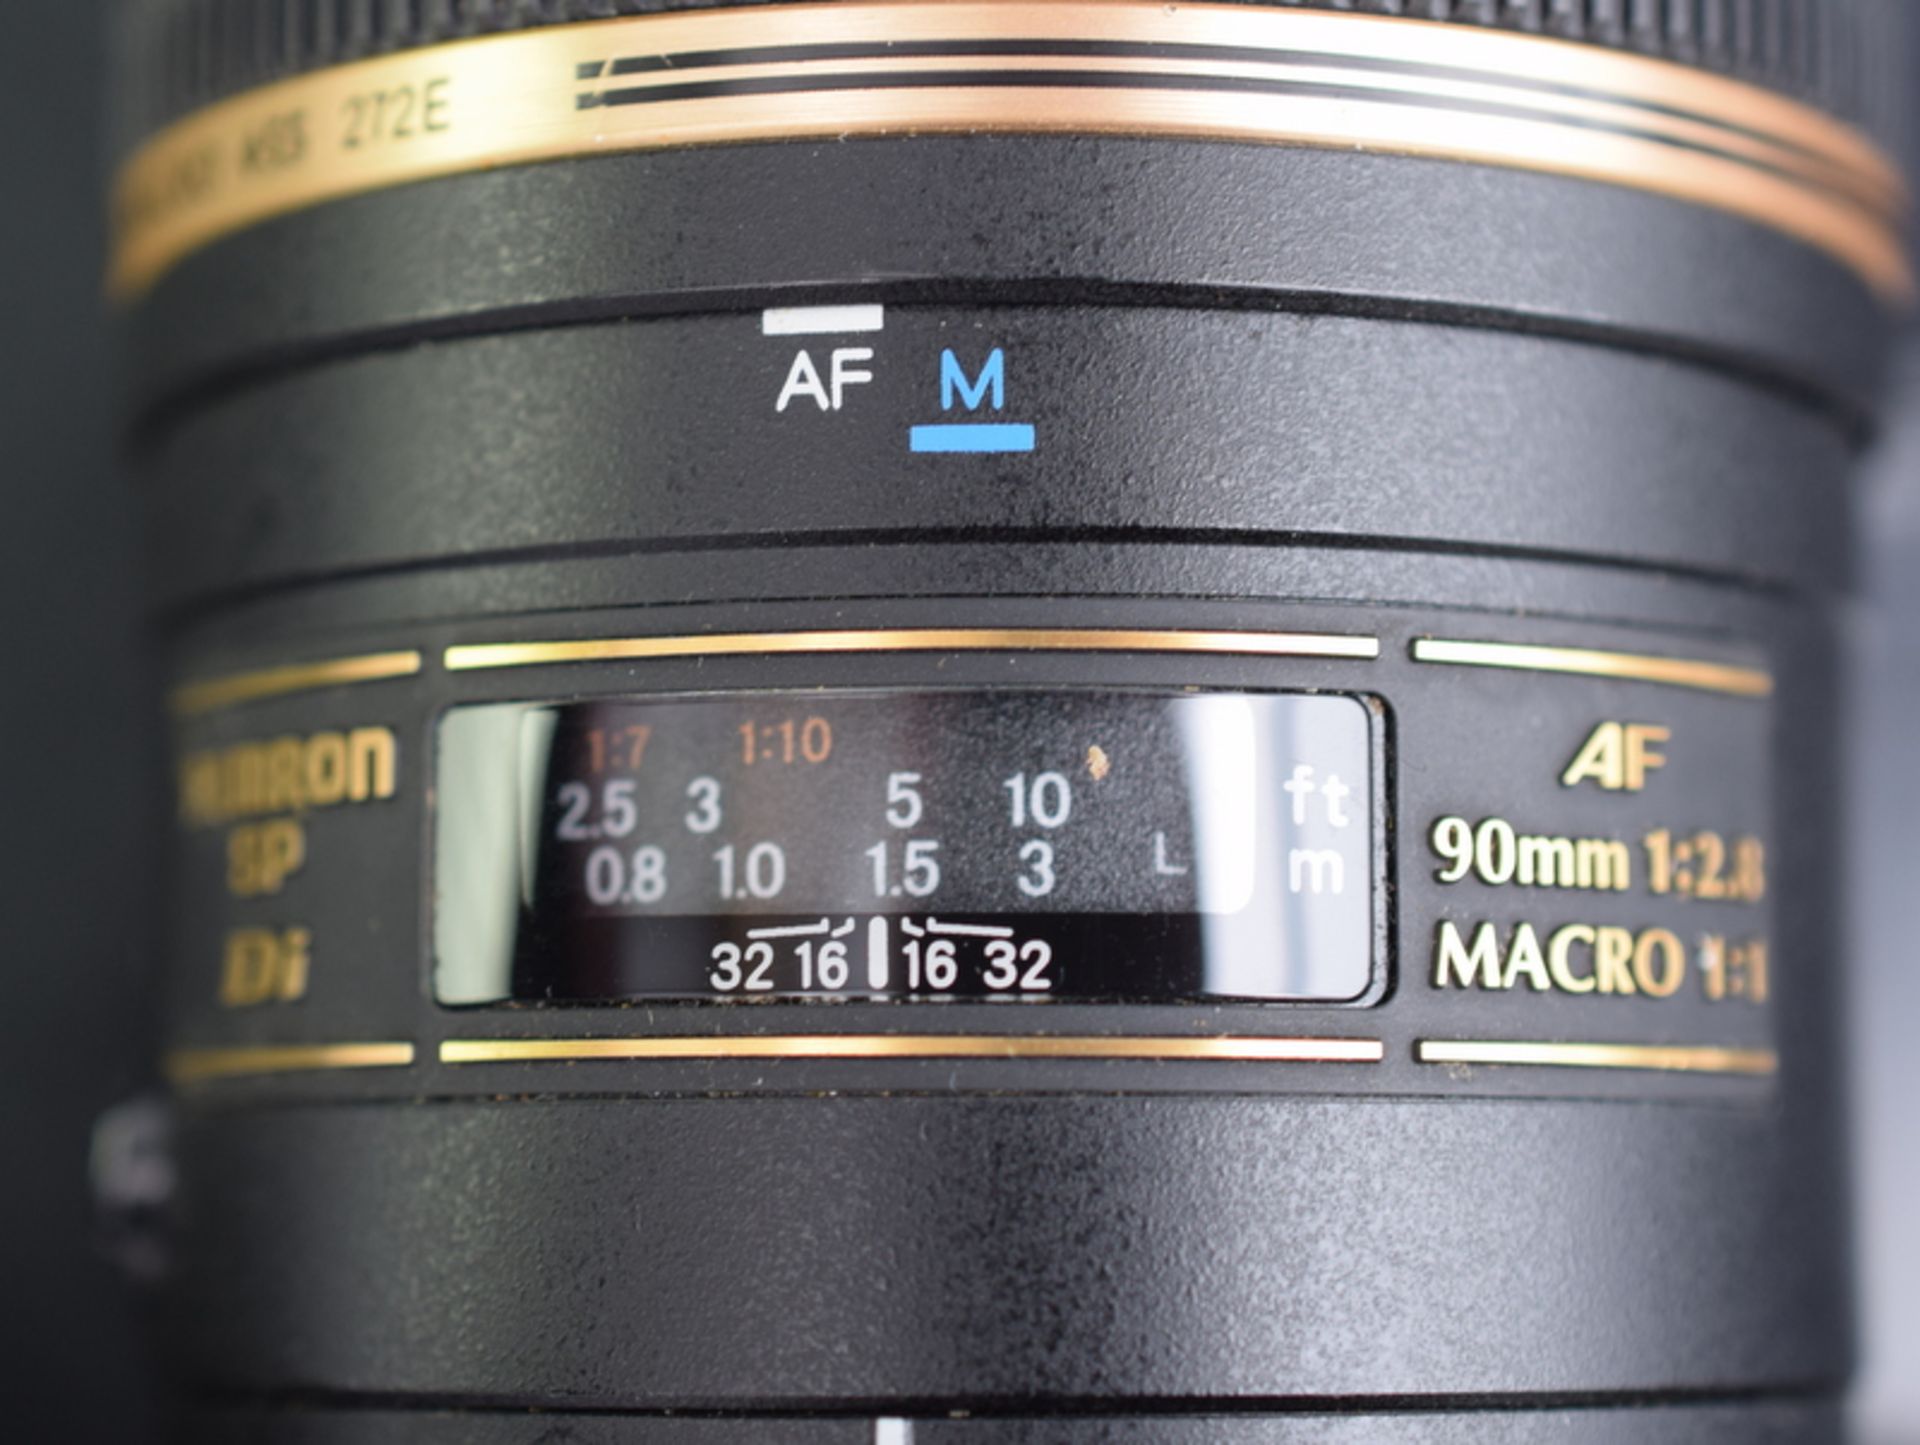 Tamron SP AF 90mm F/2.8 Di Macro 1:1 Lens - Nikon Fit - Image 5 of 5